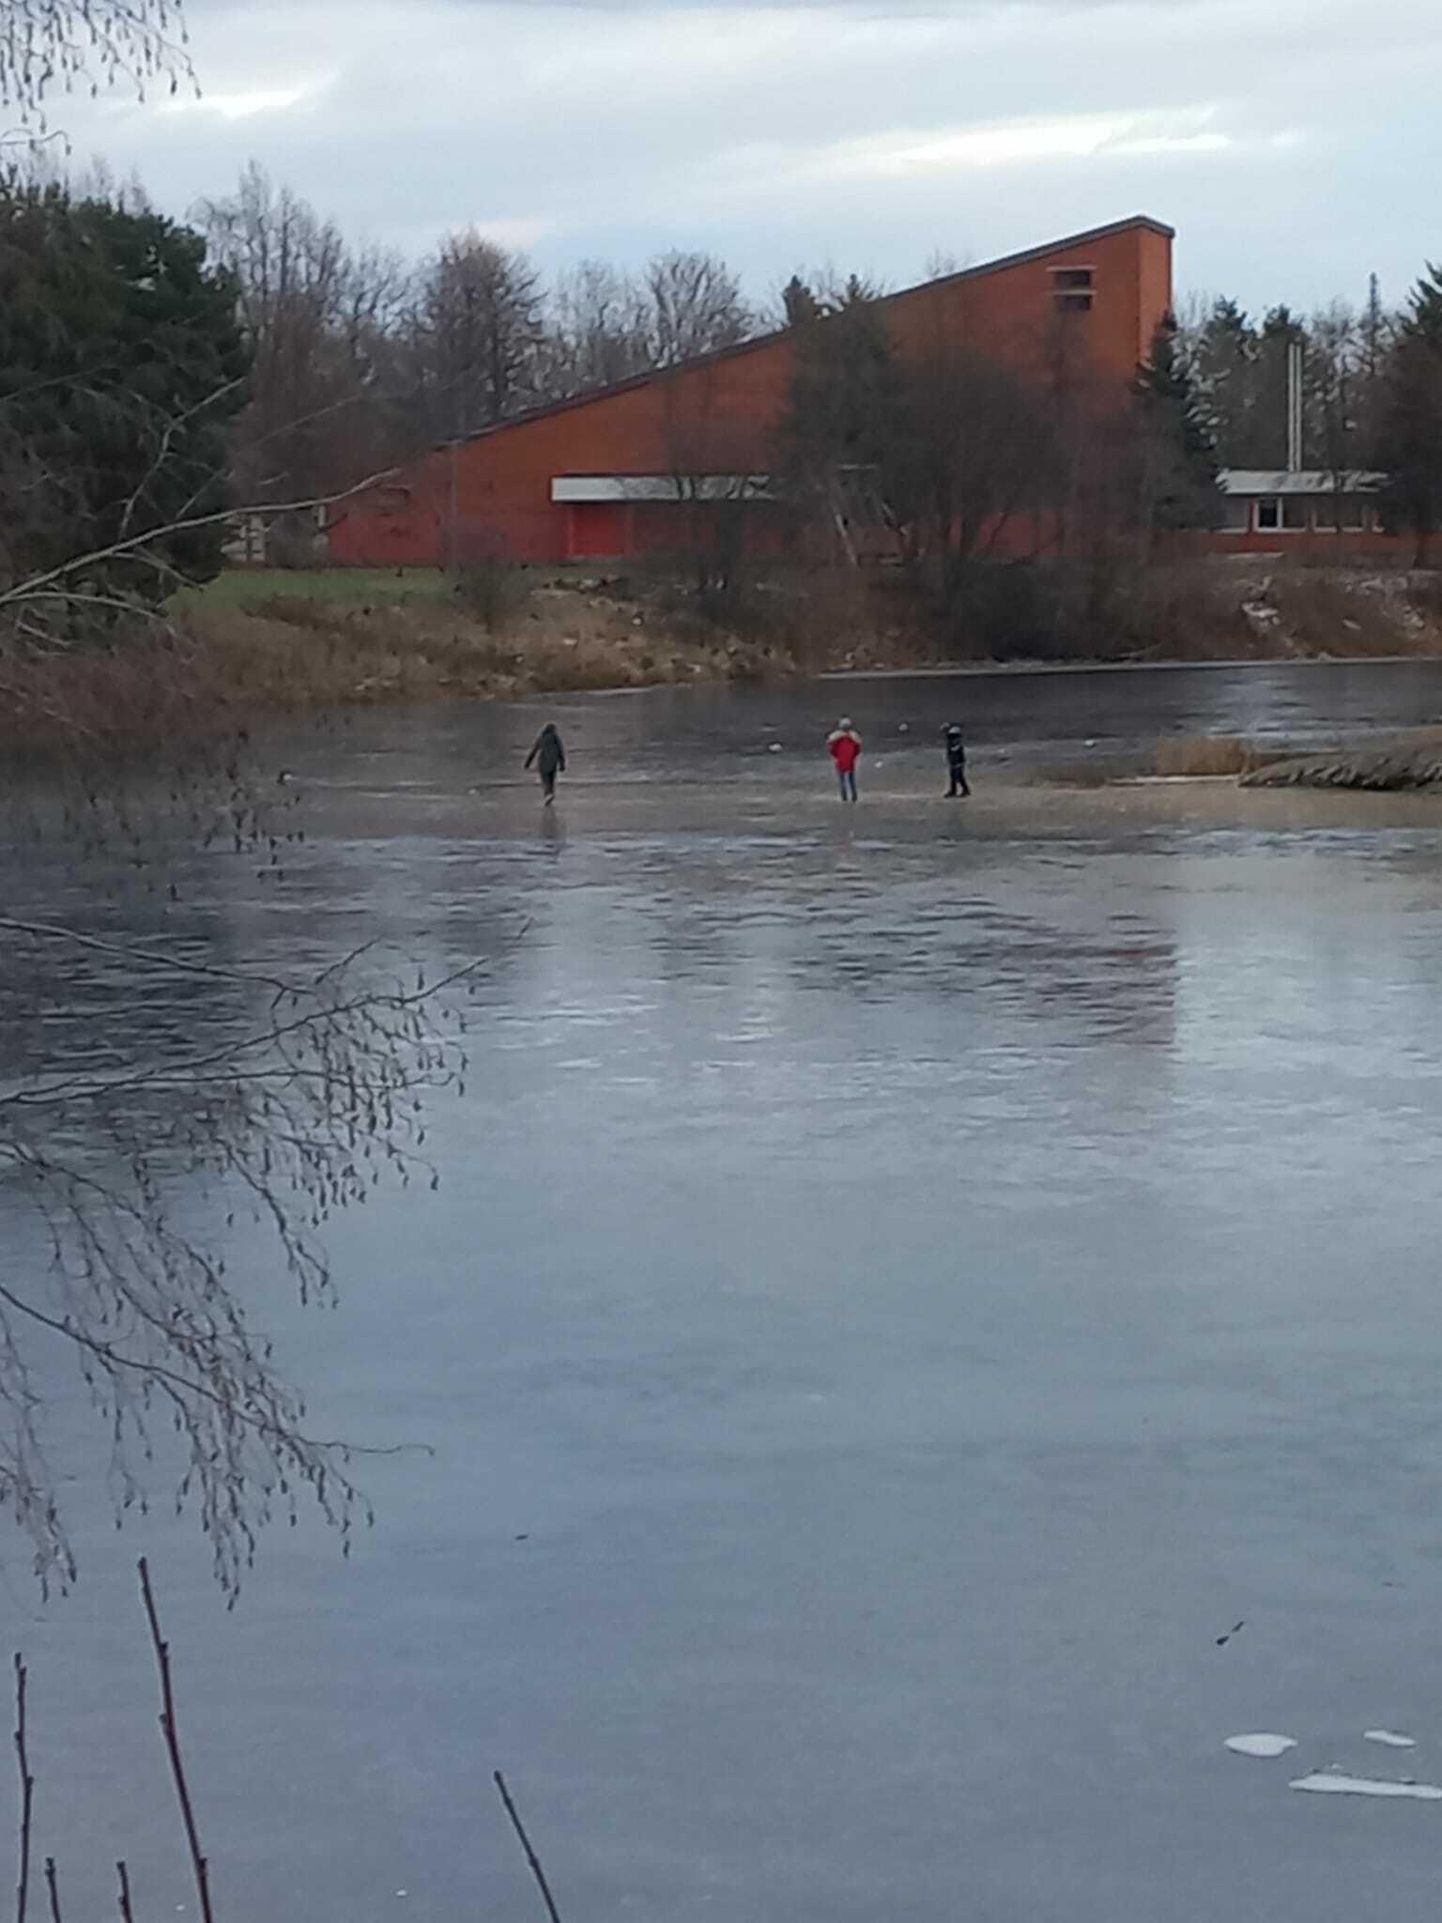 Жуткое зрелище на пруду Азери, трое мальчиков рисковали своей жизнью. В настоящее время еще недостаточно холодно, чтобы лед мог выдержать человека.